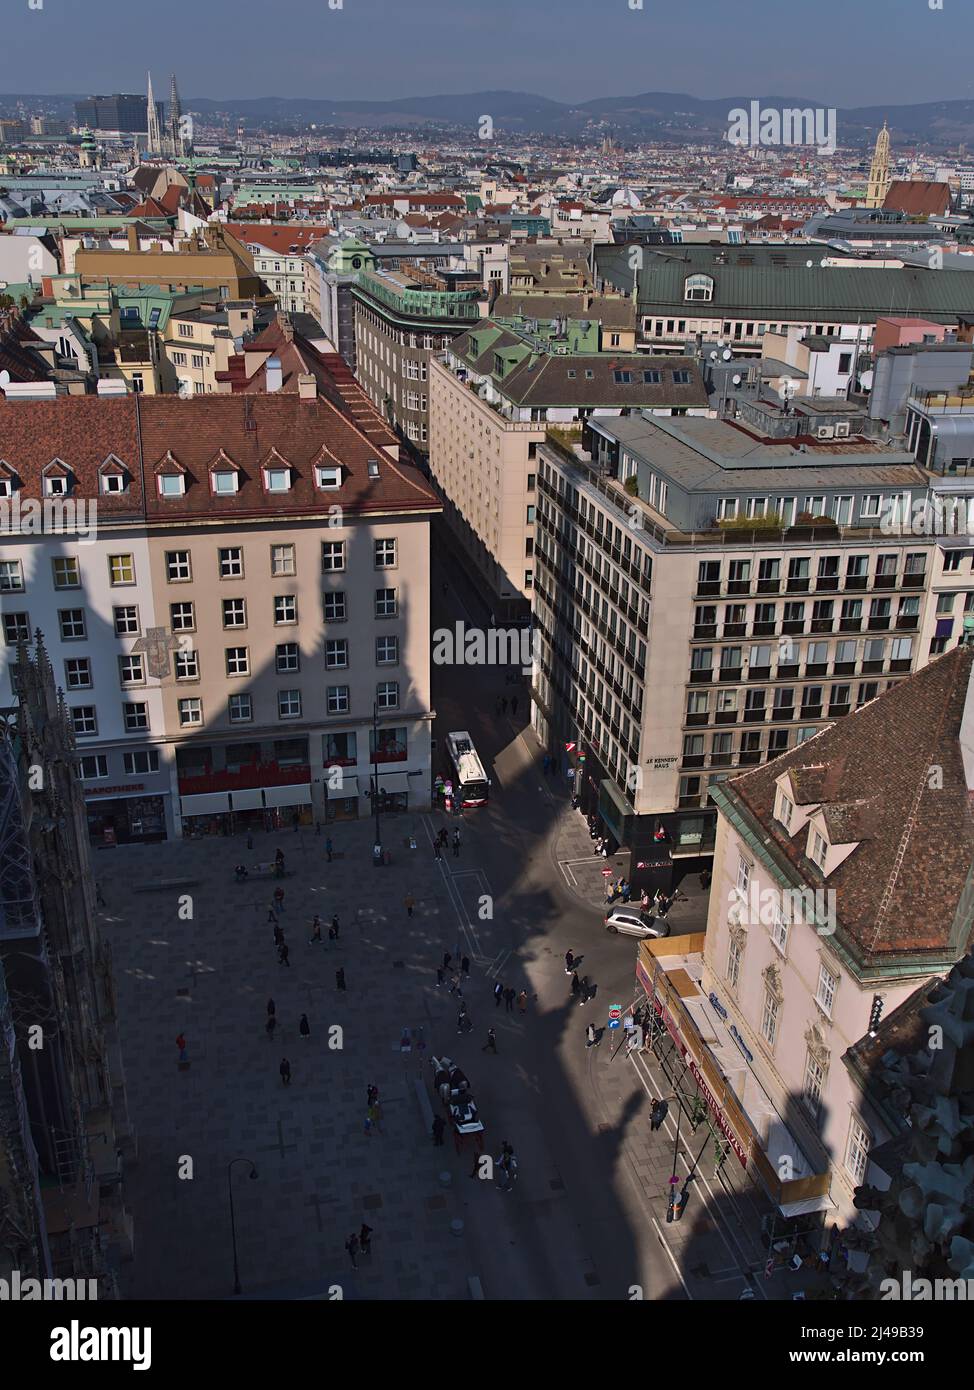 Hochwinkelansicht des historischen Zentrums von Wien, Österreich mit populärem Stephansplatz umgeben von dichter Bebauung vom Stephansdom aus gesehen. Stockfoto